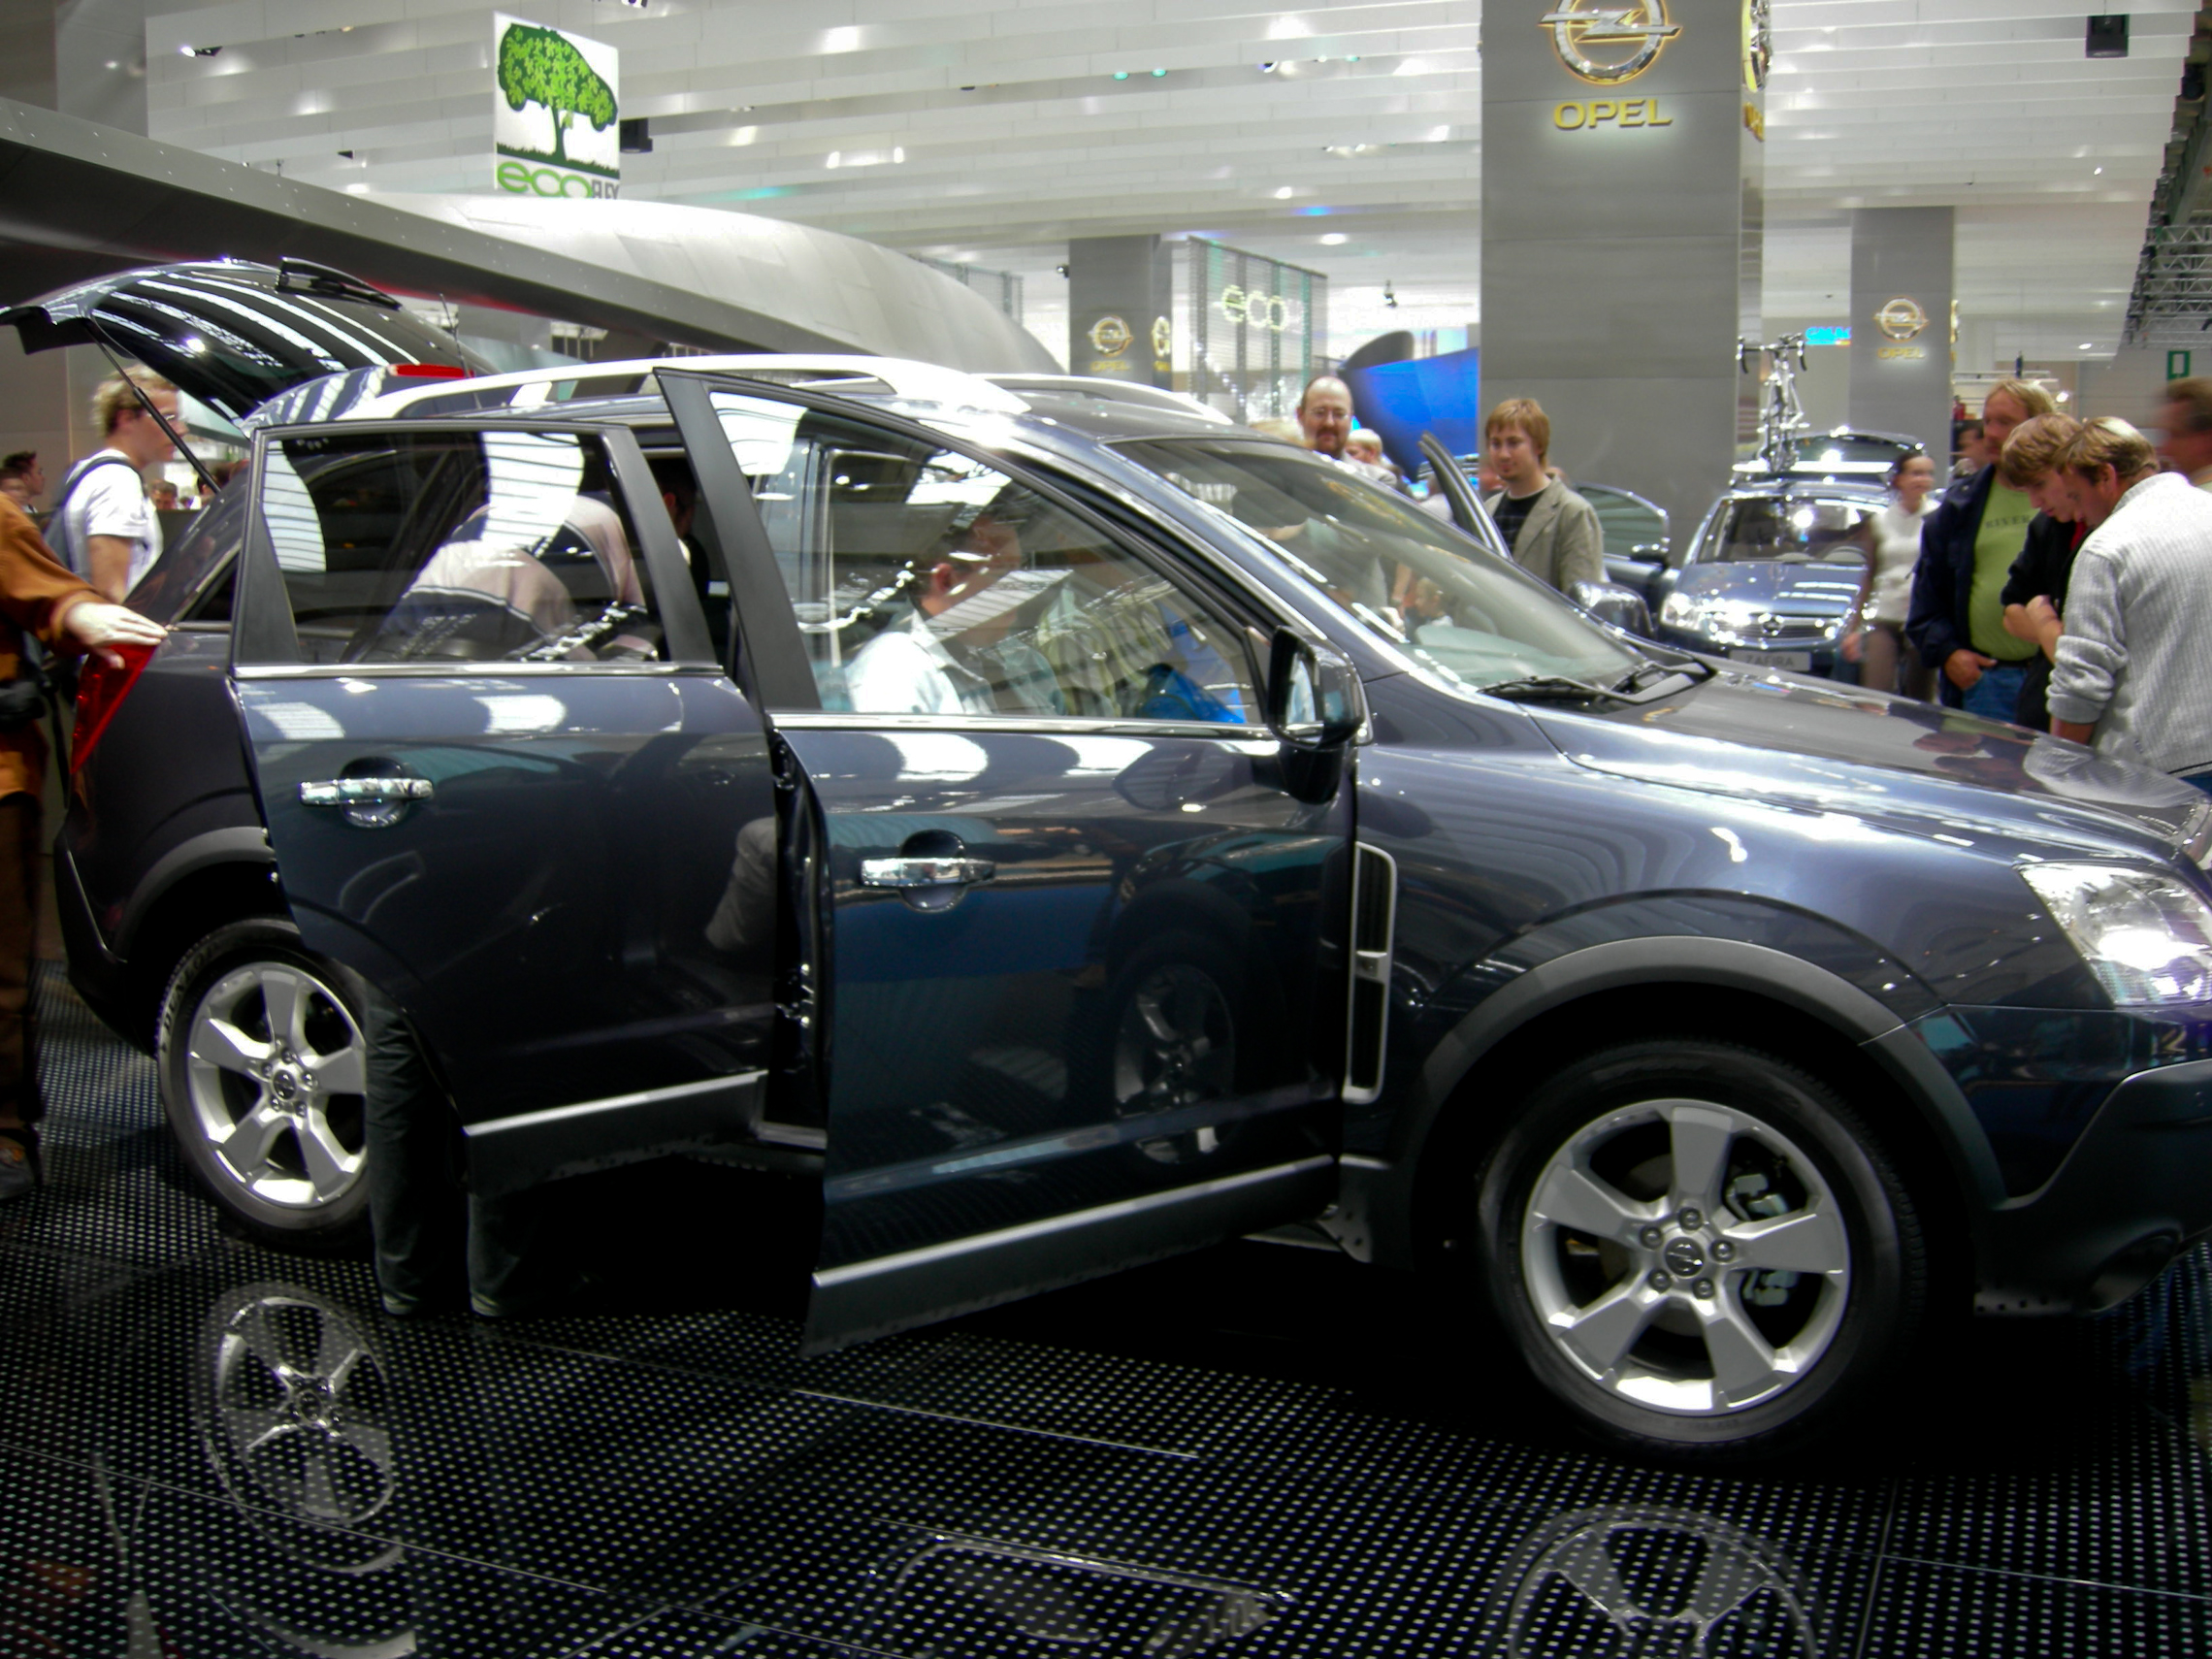 IAA 2007 - Opel Antara | Flickr - Photo Sharing!